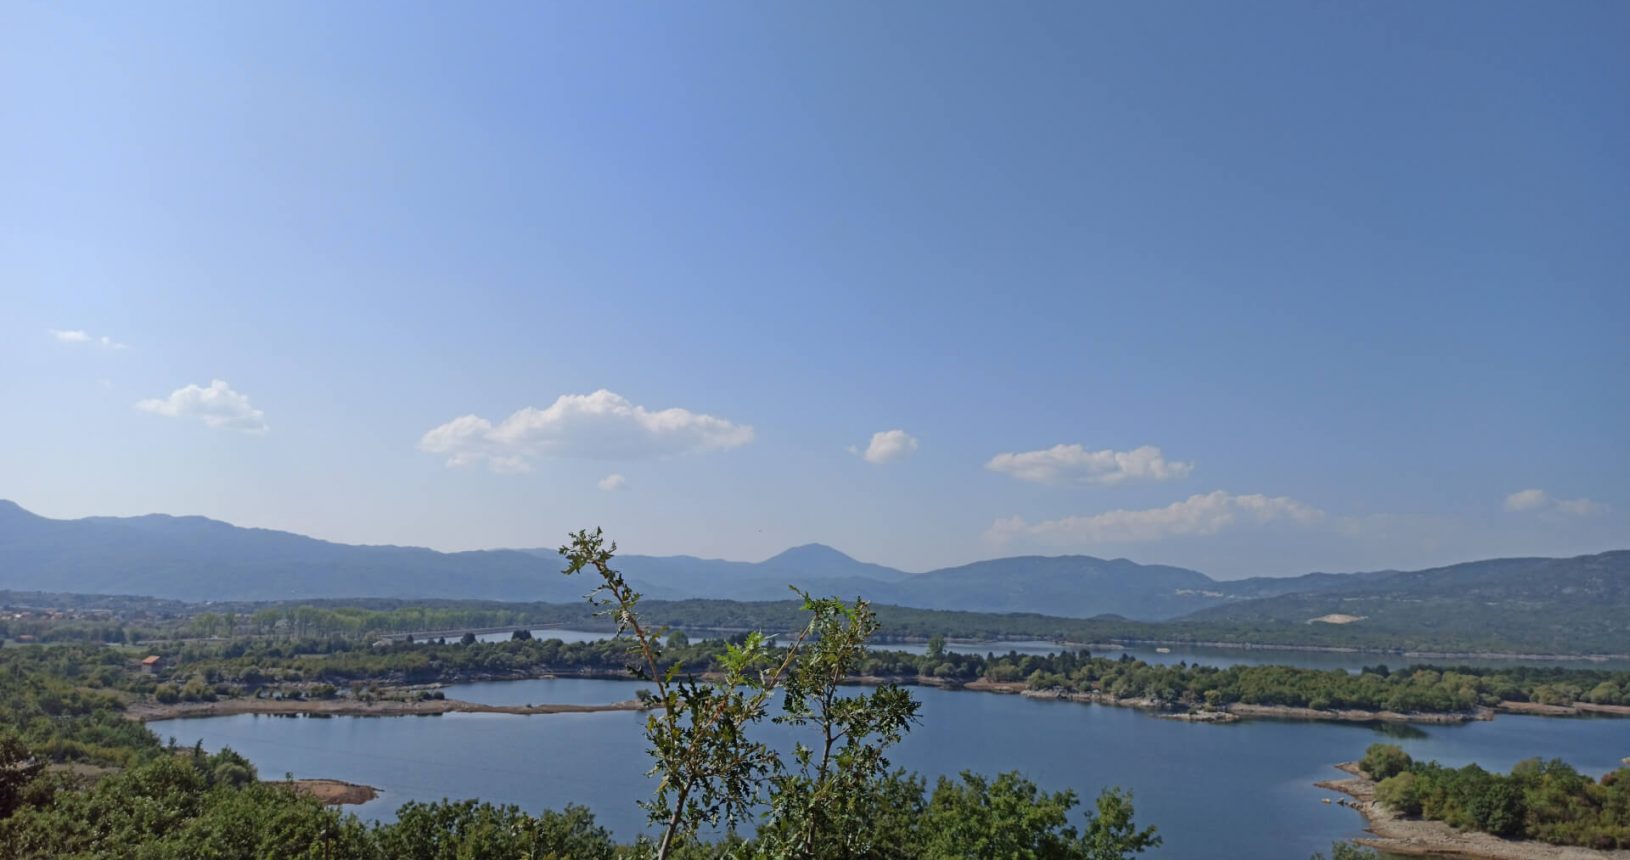 Krupac Lake near Niksic